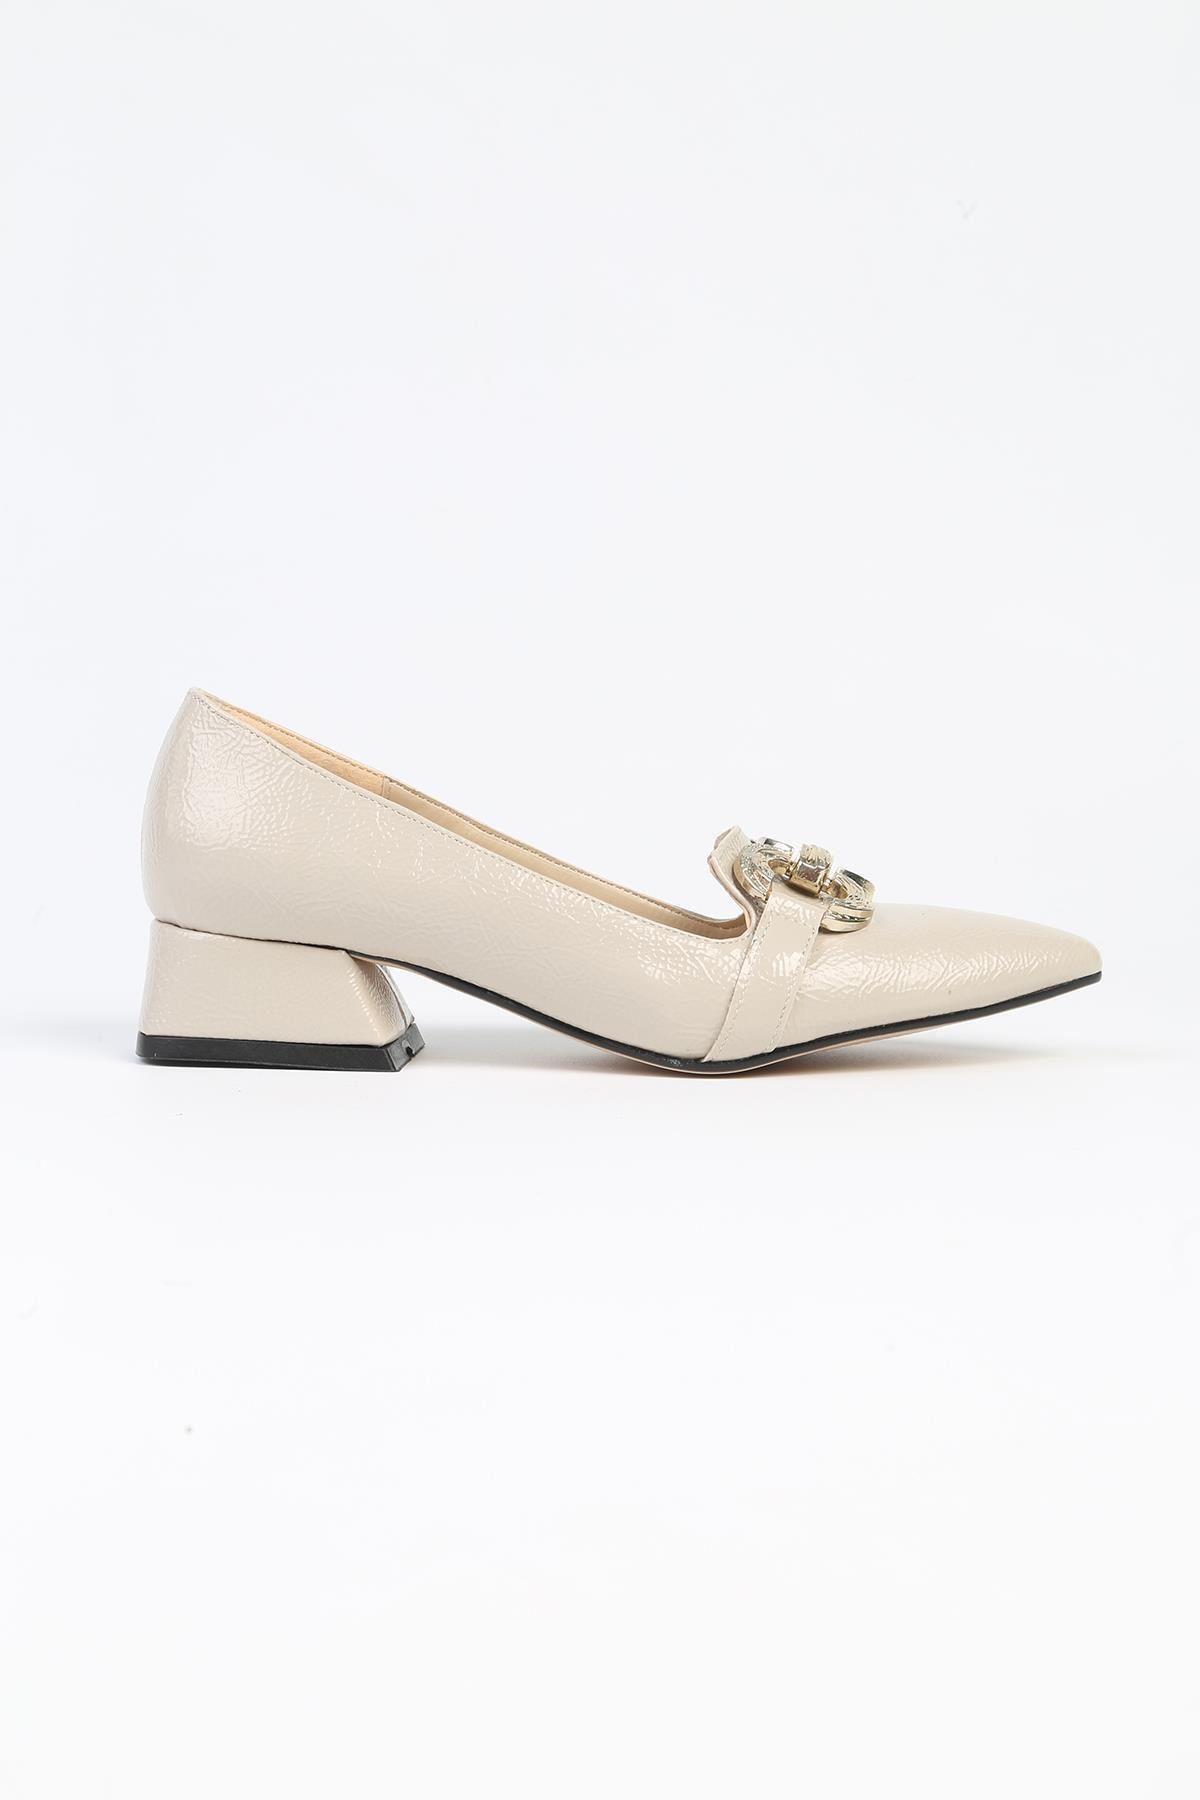 Pierre Cardin ® | PC-52568 - 3478 Bej Kırışık - Kadın Topuklu Ayakkabı